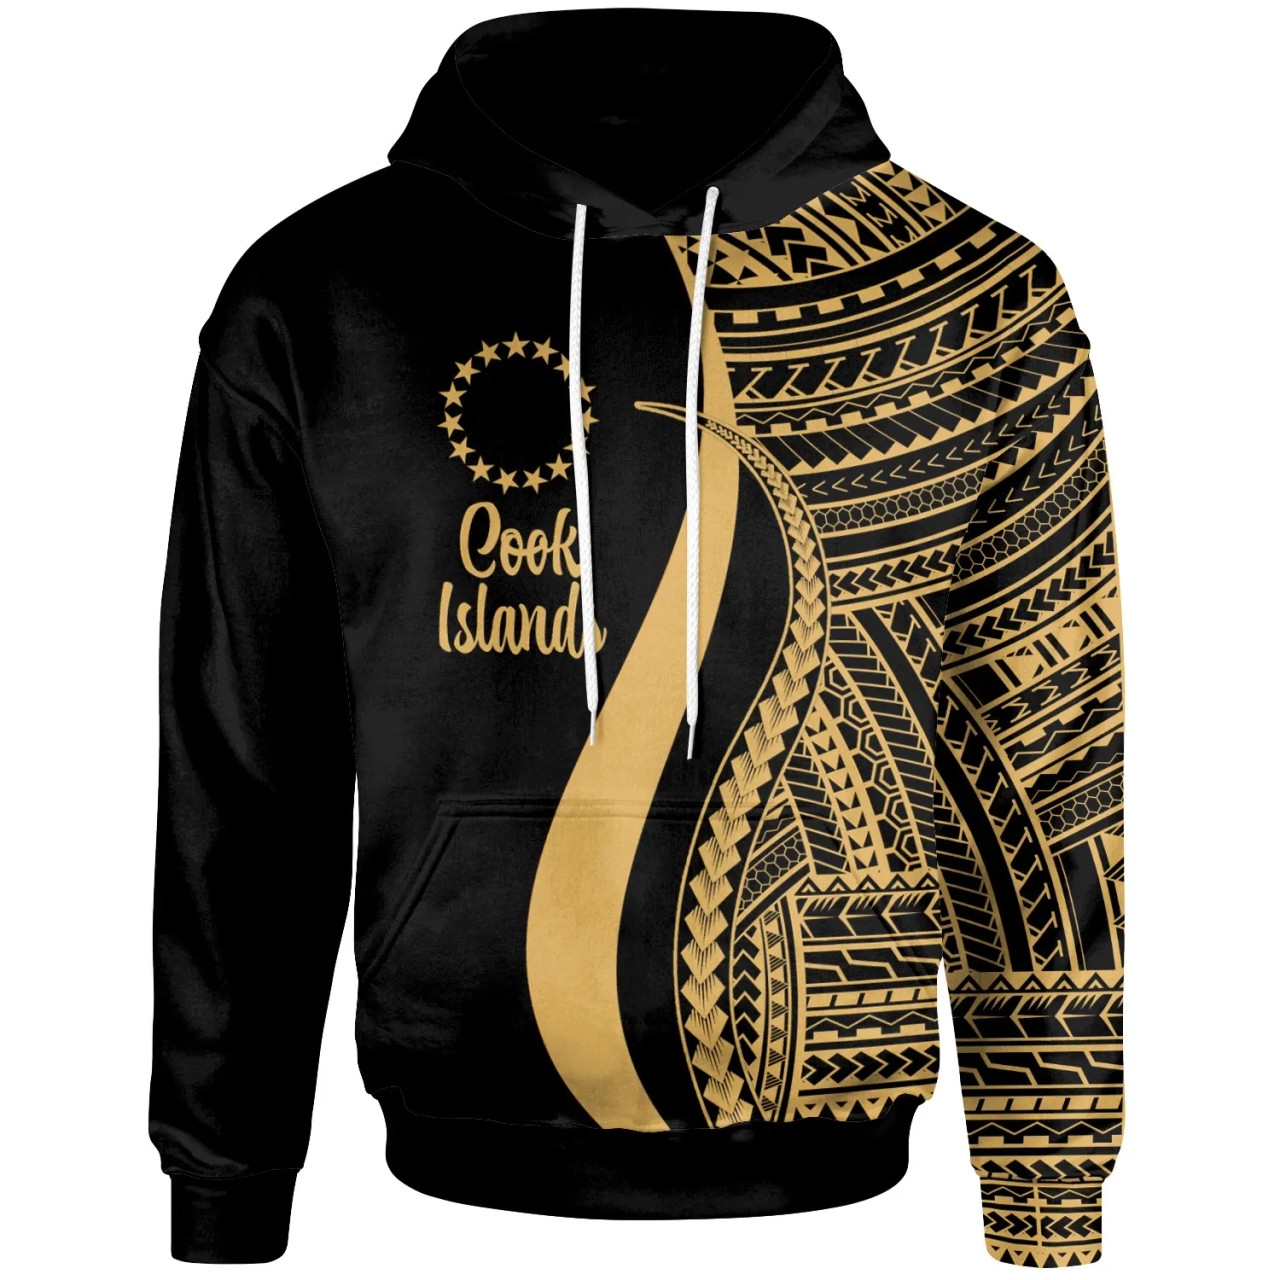 Cook Islands Hoodie Gold - Tentacle Tribal Pattern